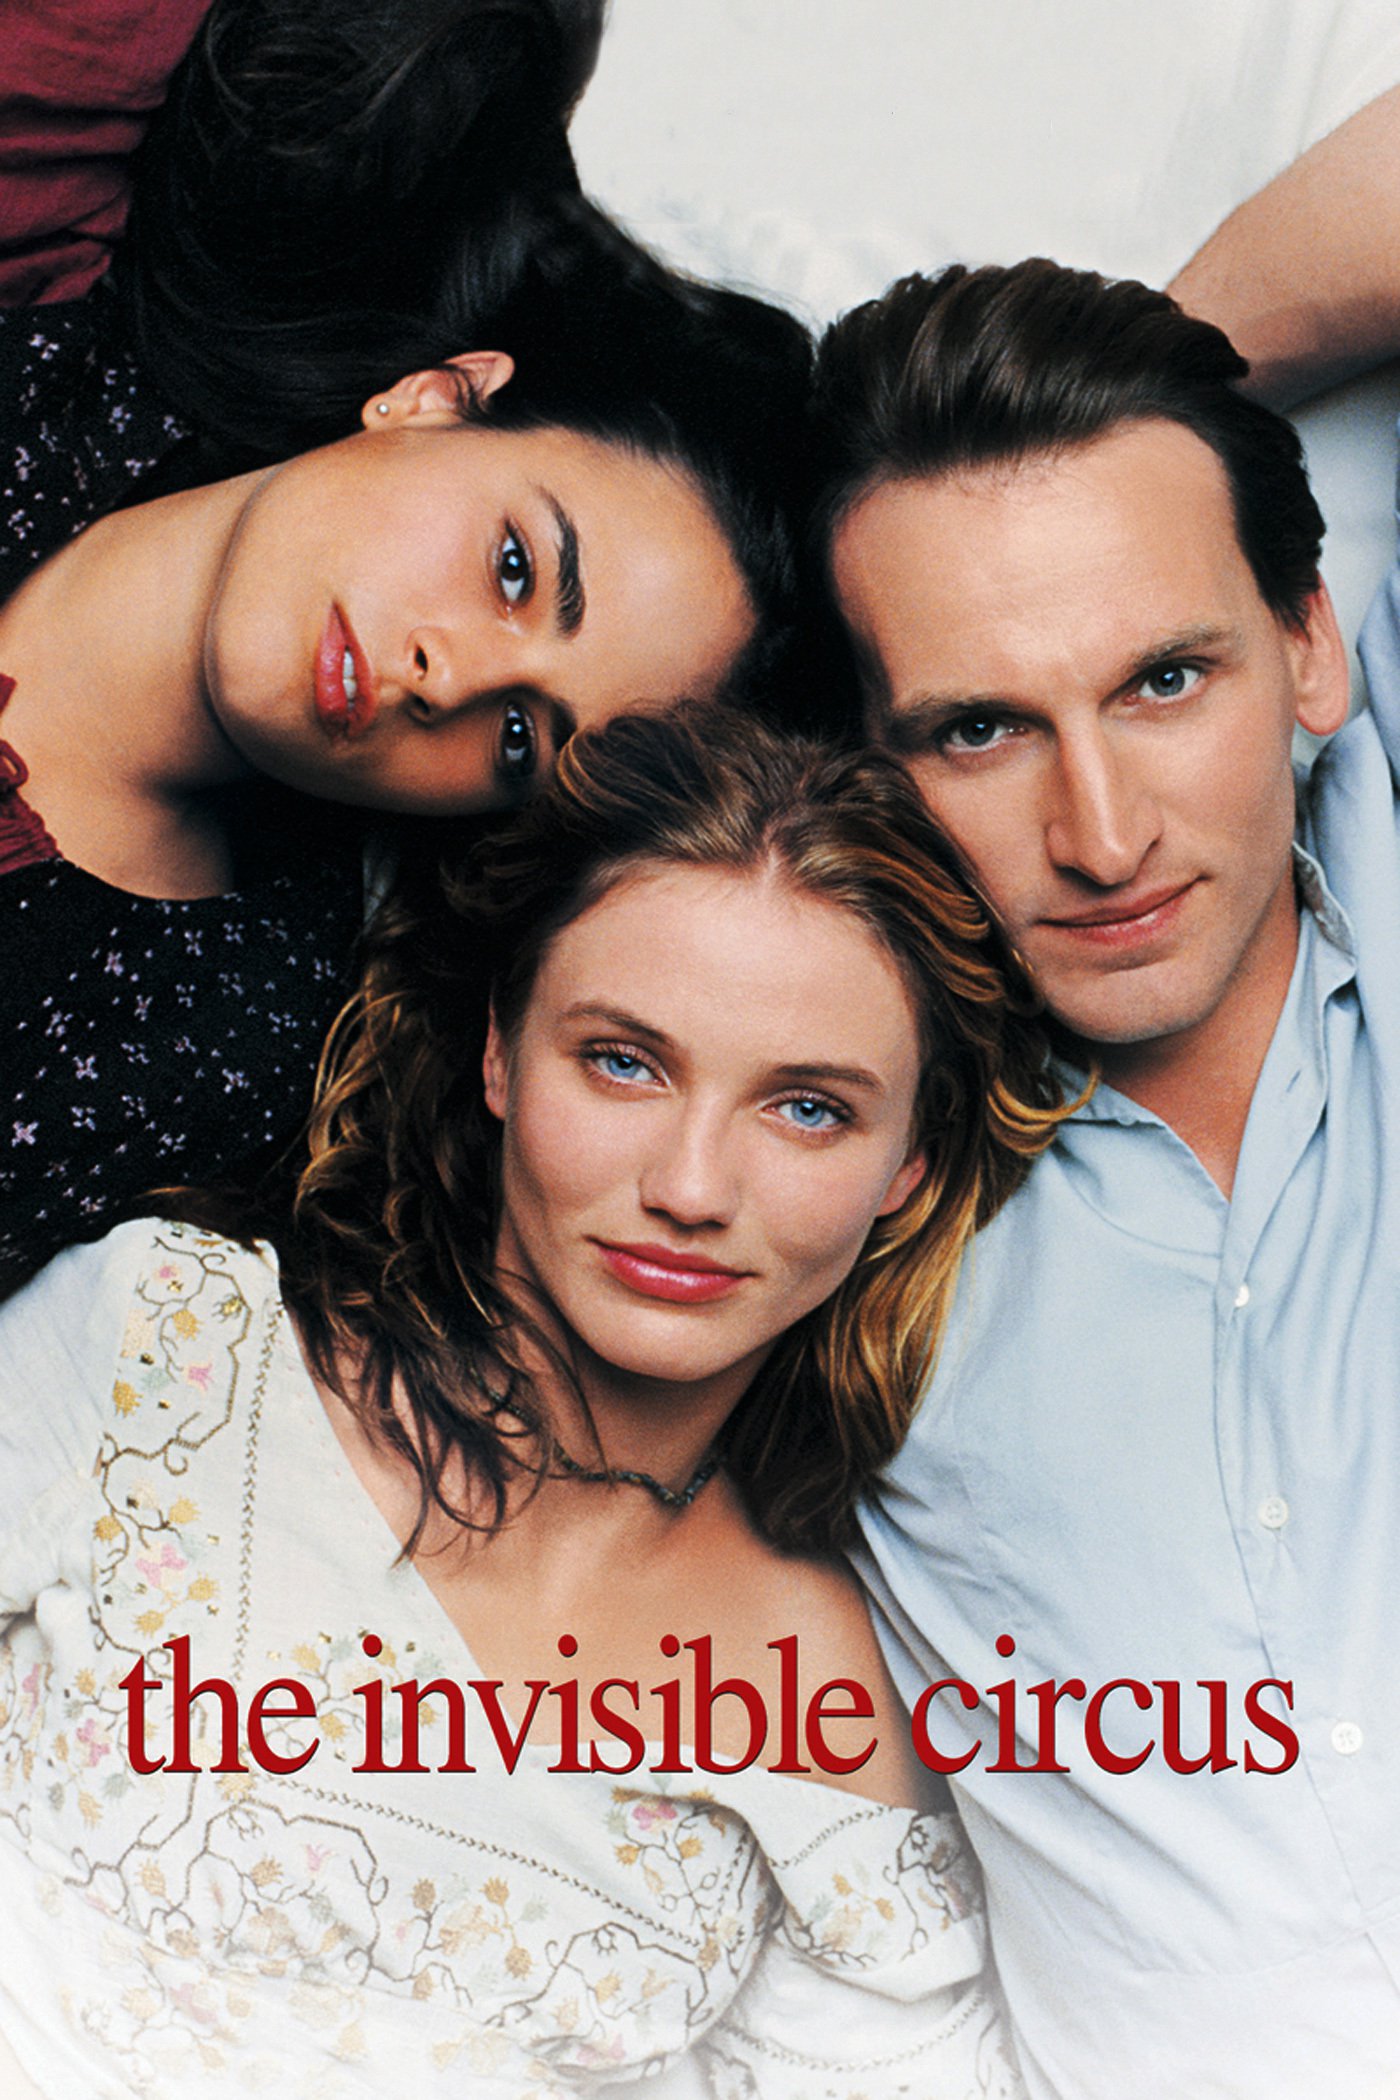 Plakat von "The Invisible Circus"